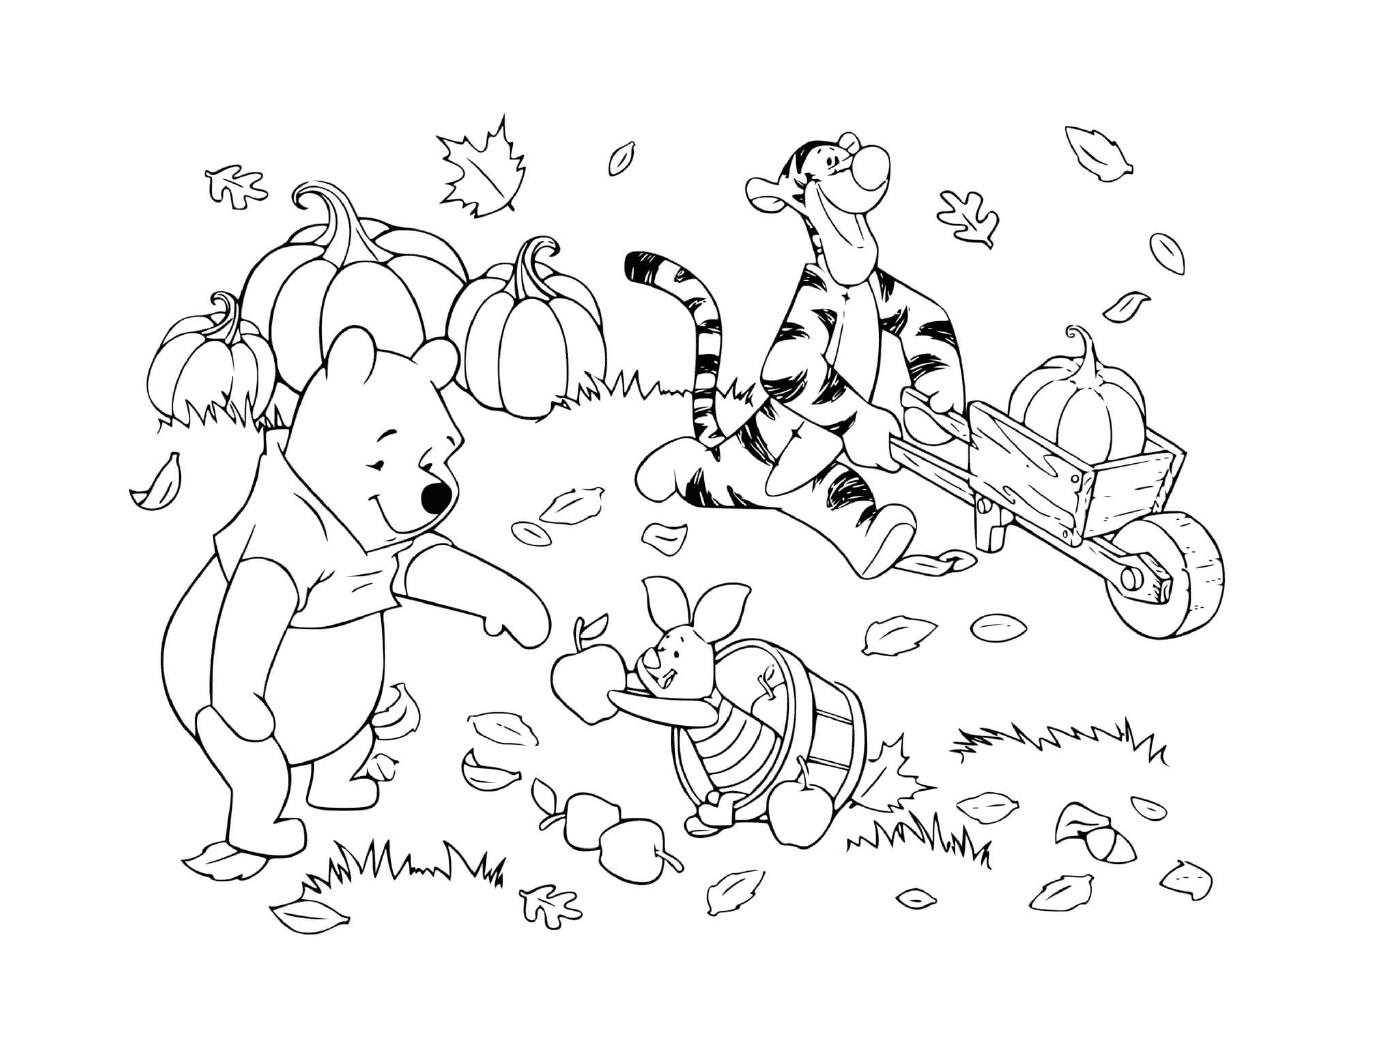  Медведь Винни, Тигру и Порцинет собирают листья, тыквы и яблоки 